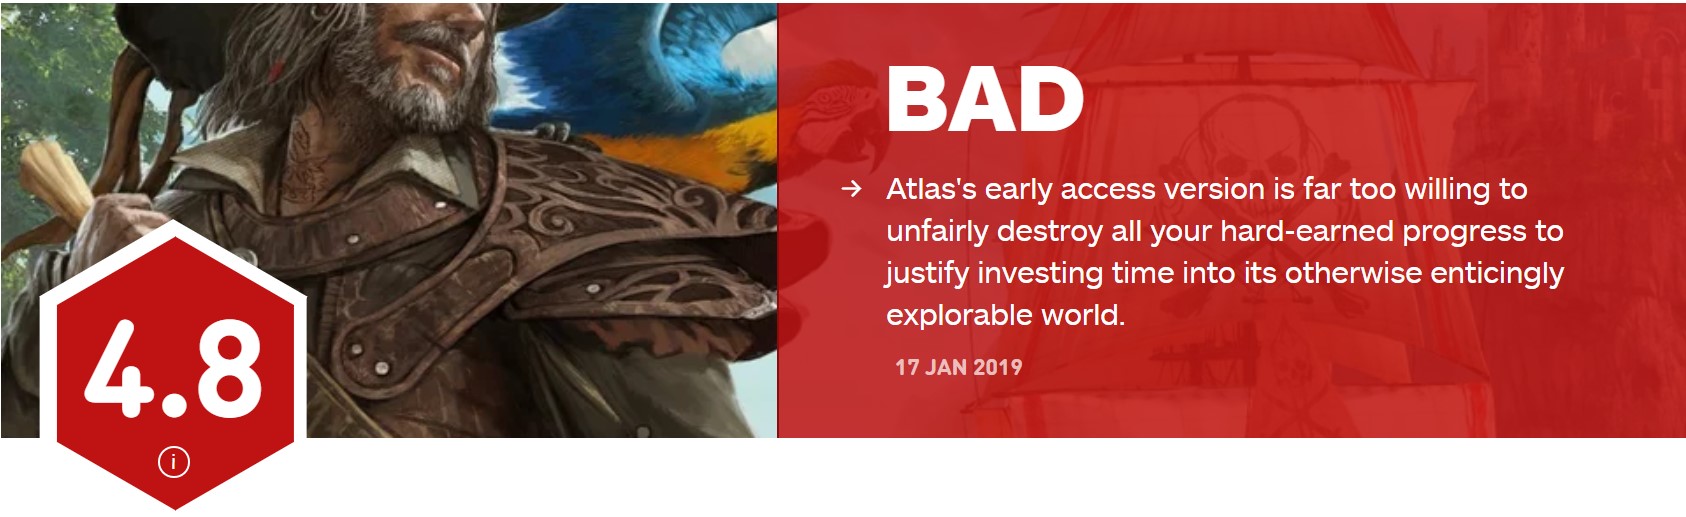 《圆舟》开支商新做《Atlas》IGN 4.8分 借出做好便返航了